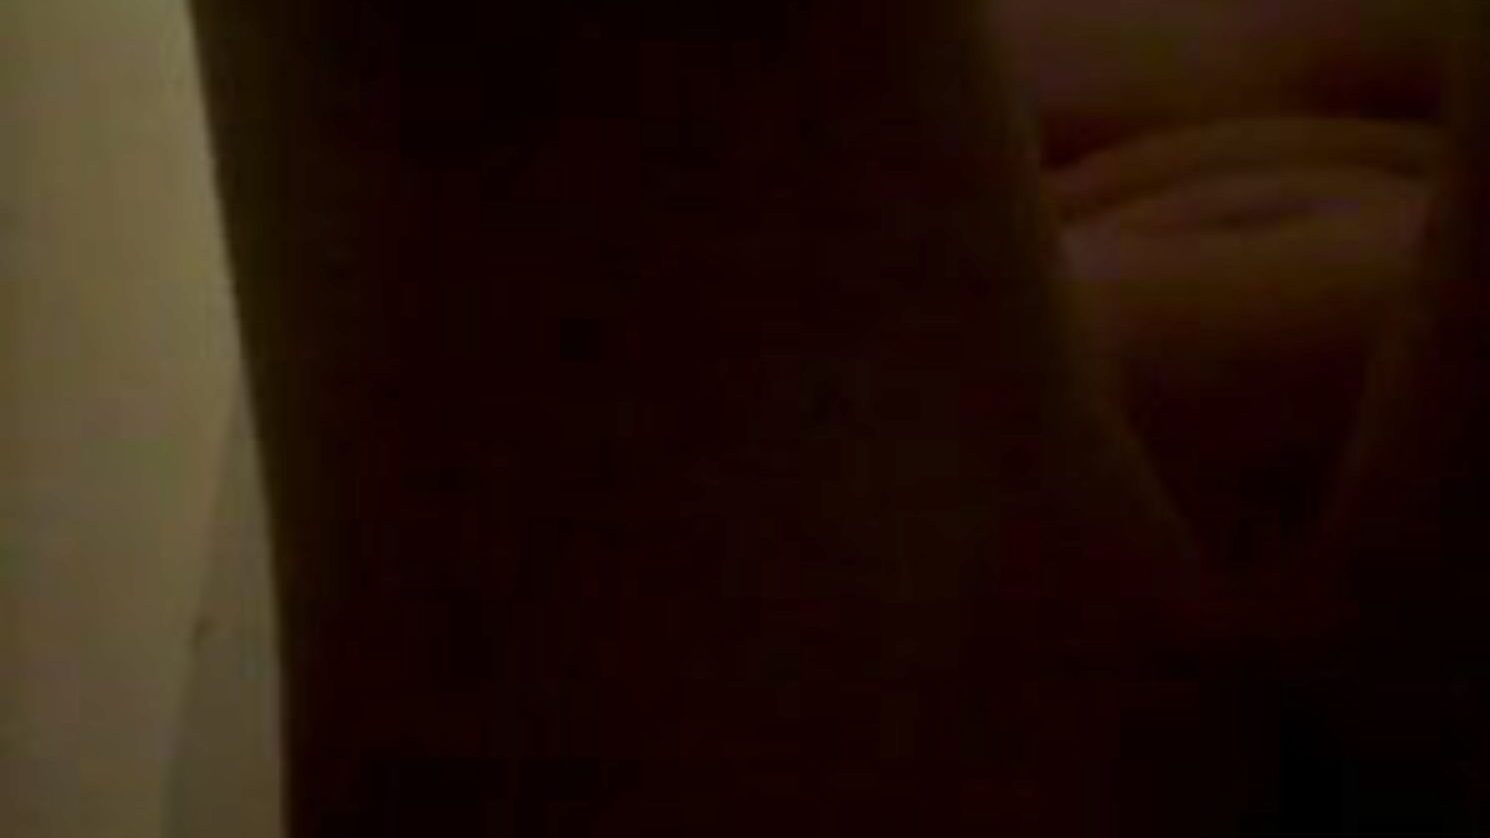 piss et frotte sur le corps, pee porn 45: xhamster assista ao clipe de piss et frotte sur le corps no xhamster, o site de tubo de orgia mais gordo com toneladas de xixi grátis para todos e cenas de filmes pornôs caseiros